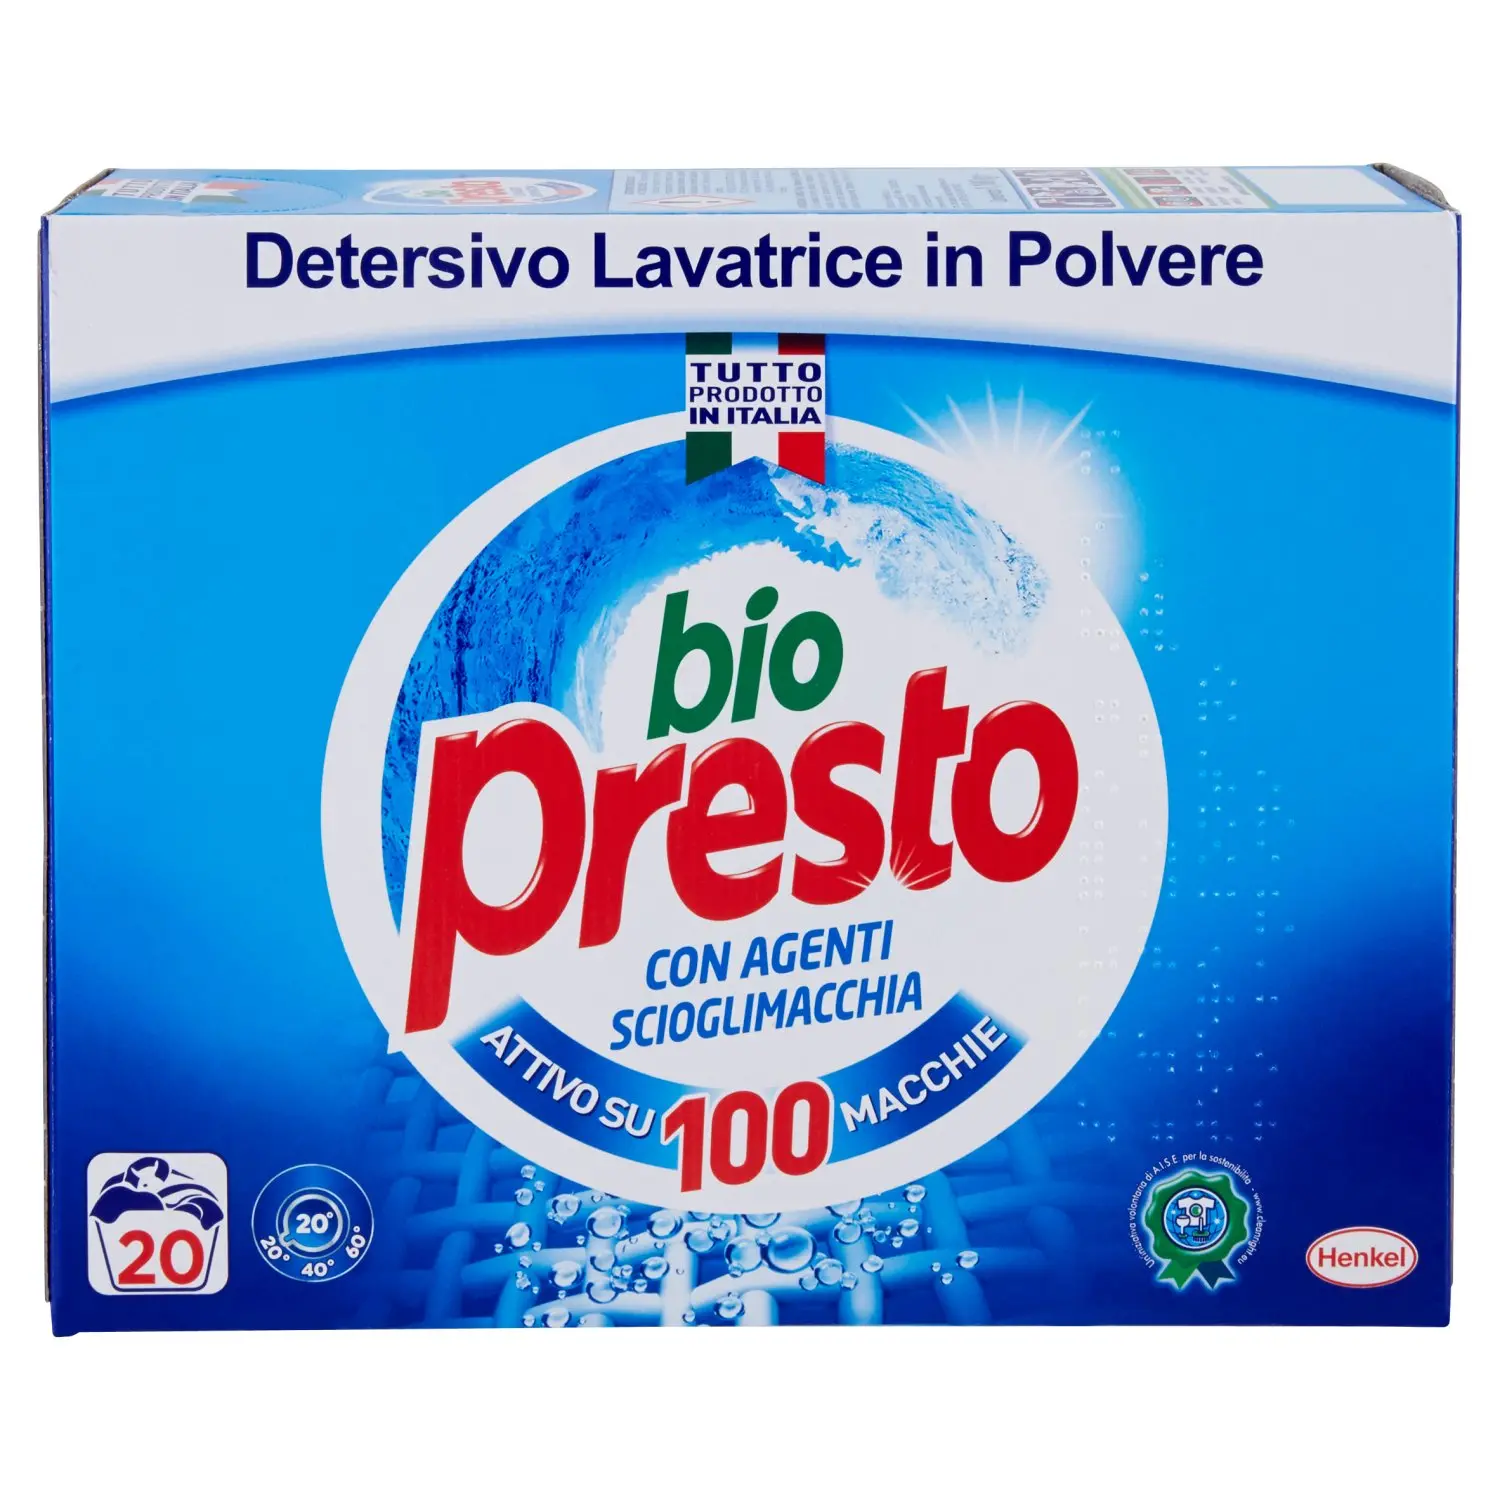 BIO PRESTO Detersivo Lavatrice in Polvere 1,100 kg